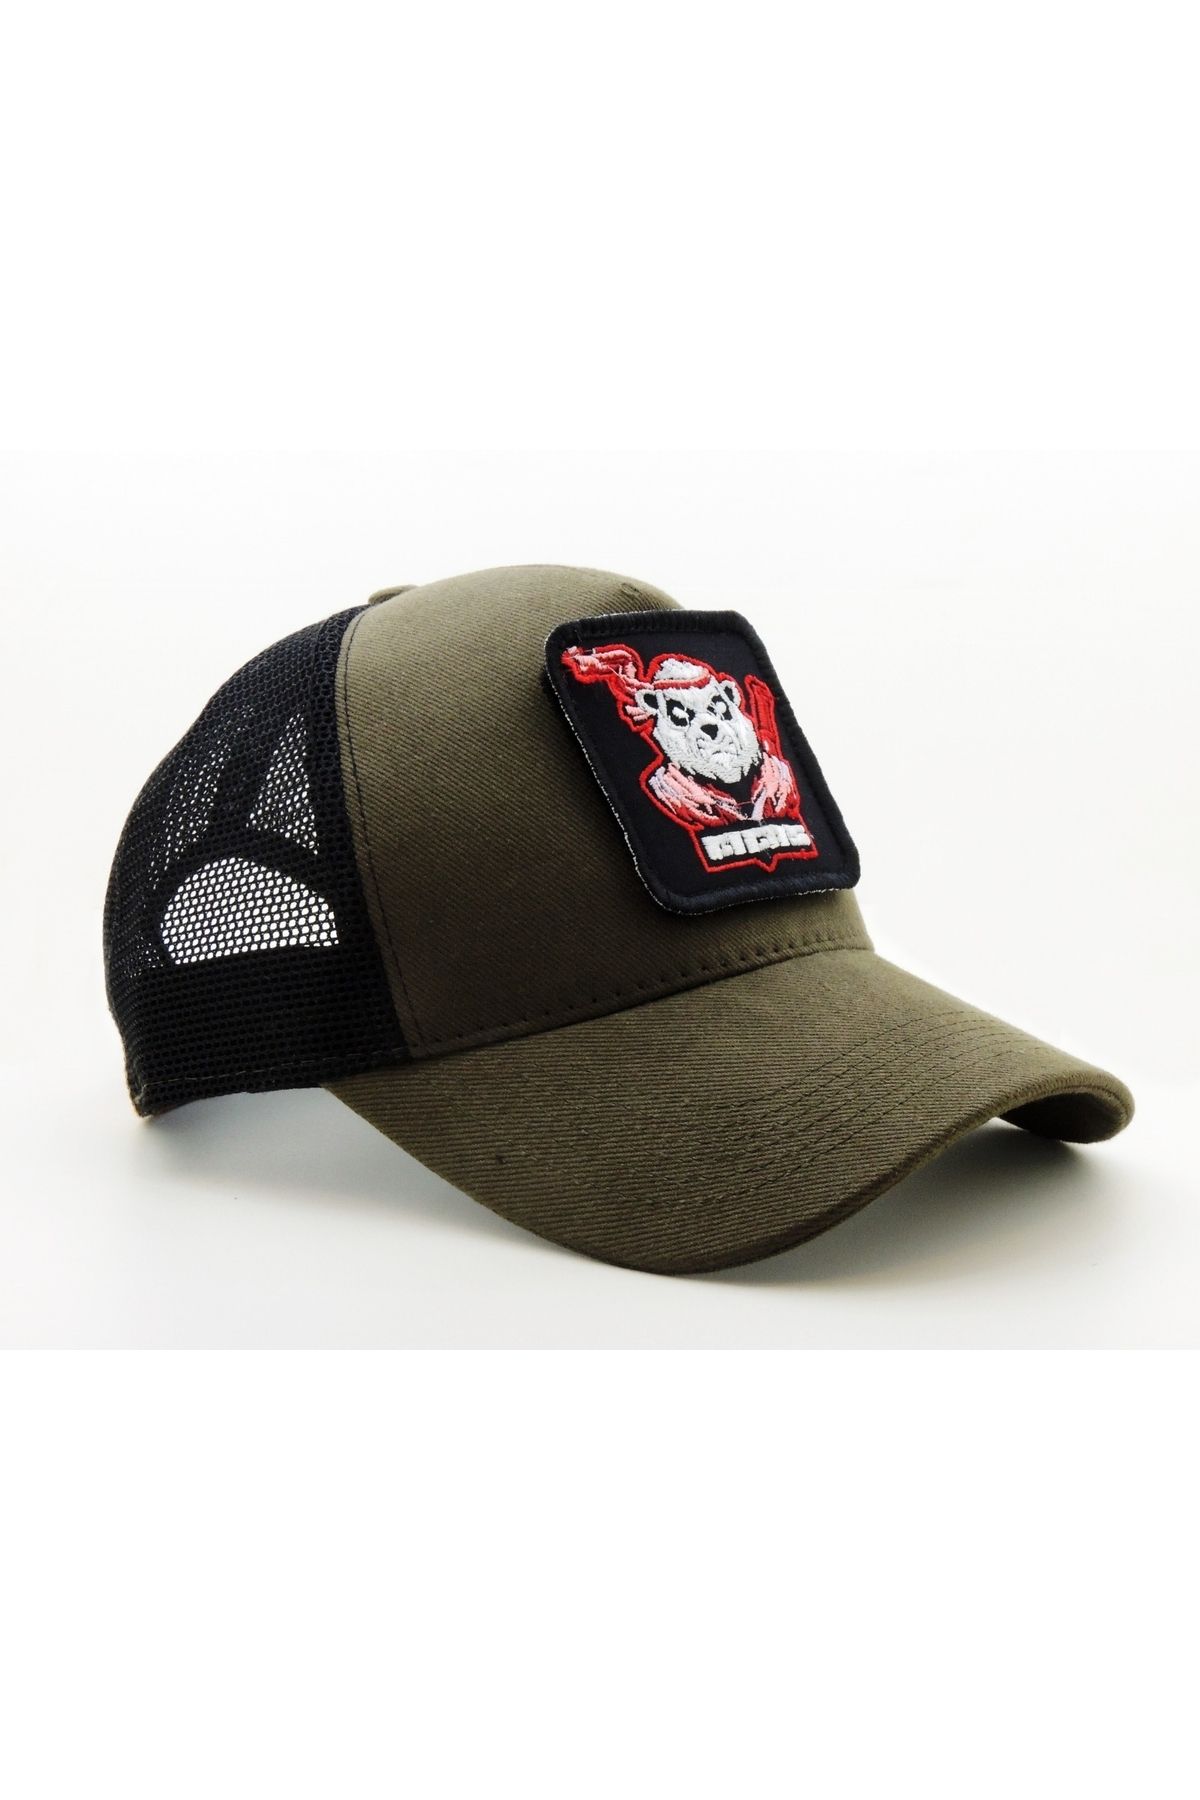 CityGoat Trucker (NAKIŞ) Panda Titas Logolu Unisex Haki-Siyah Şapka (CAP)